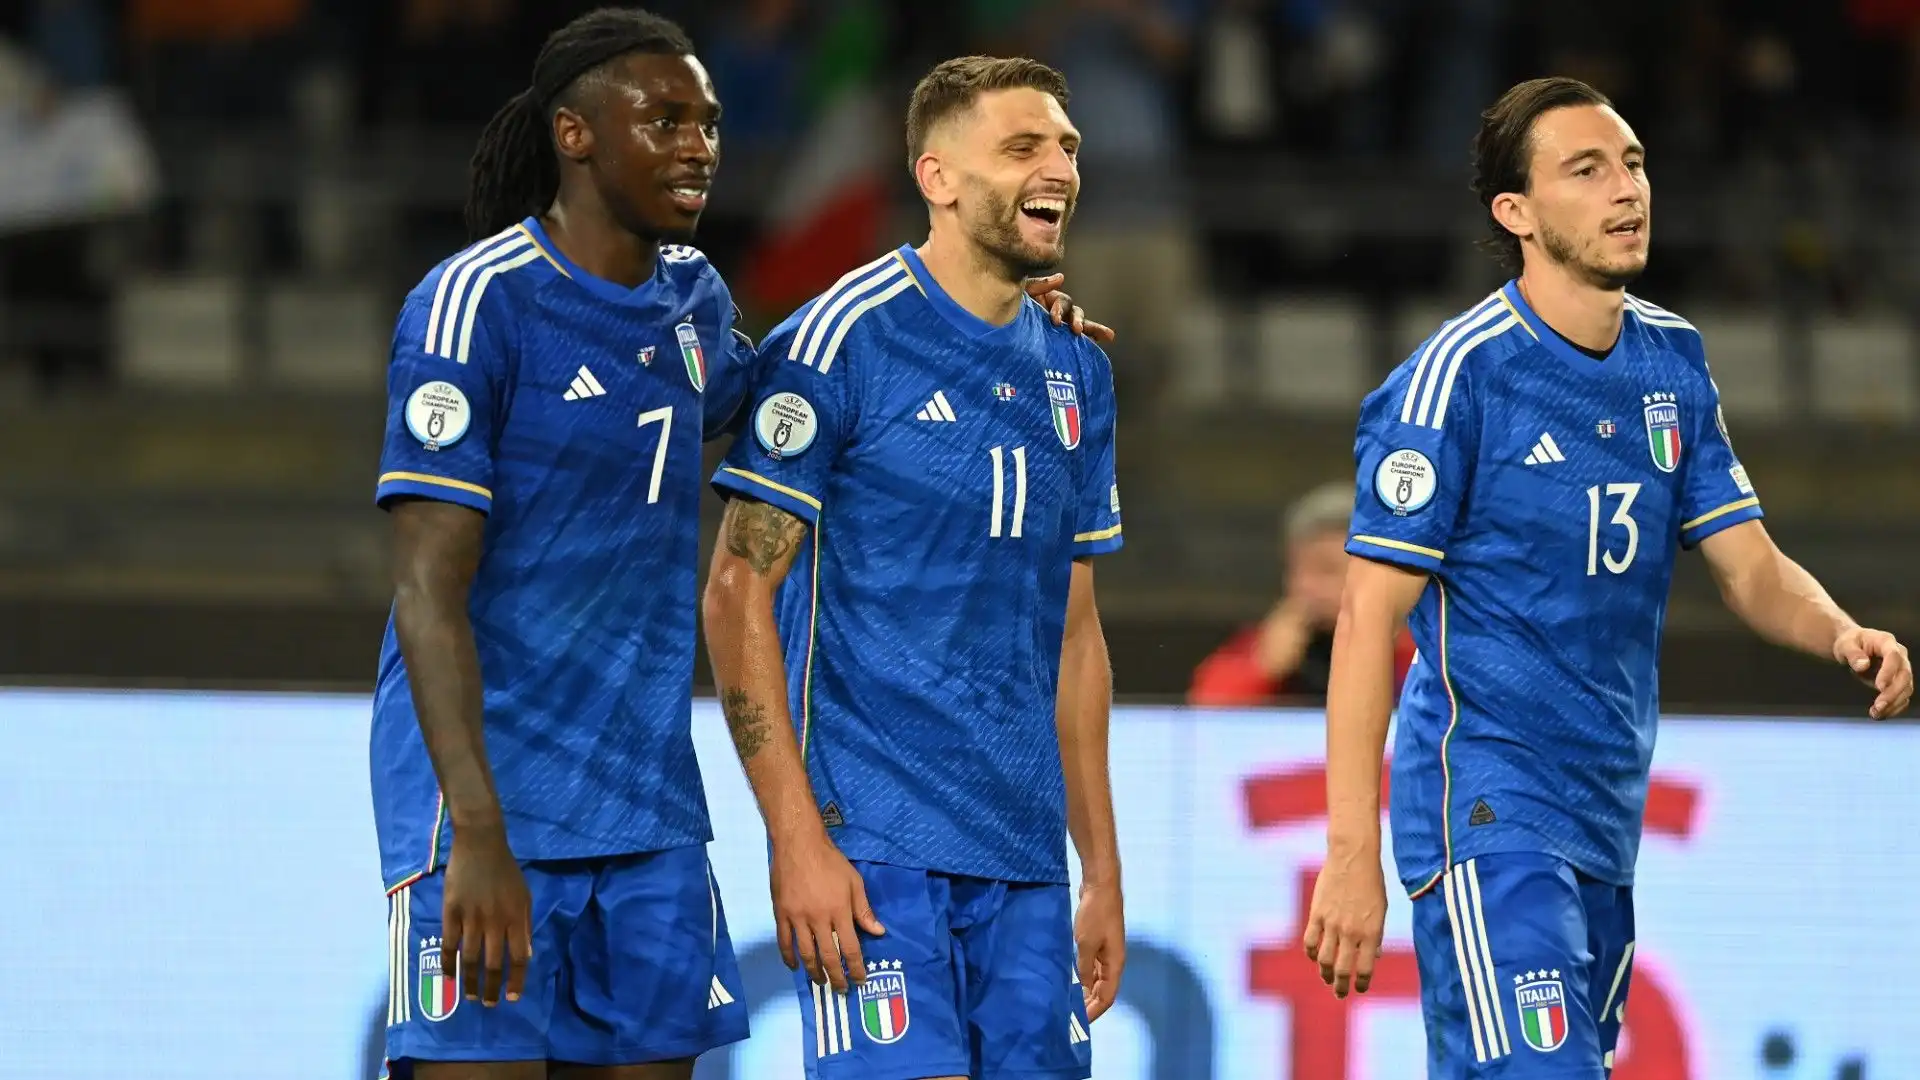 Dopo quattro partite nel Gruppo C delle qualificazioni agli Europei, gli Azzurri arrivano a 3 vittorie, un pareggio e una sconfitta.